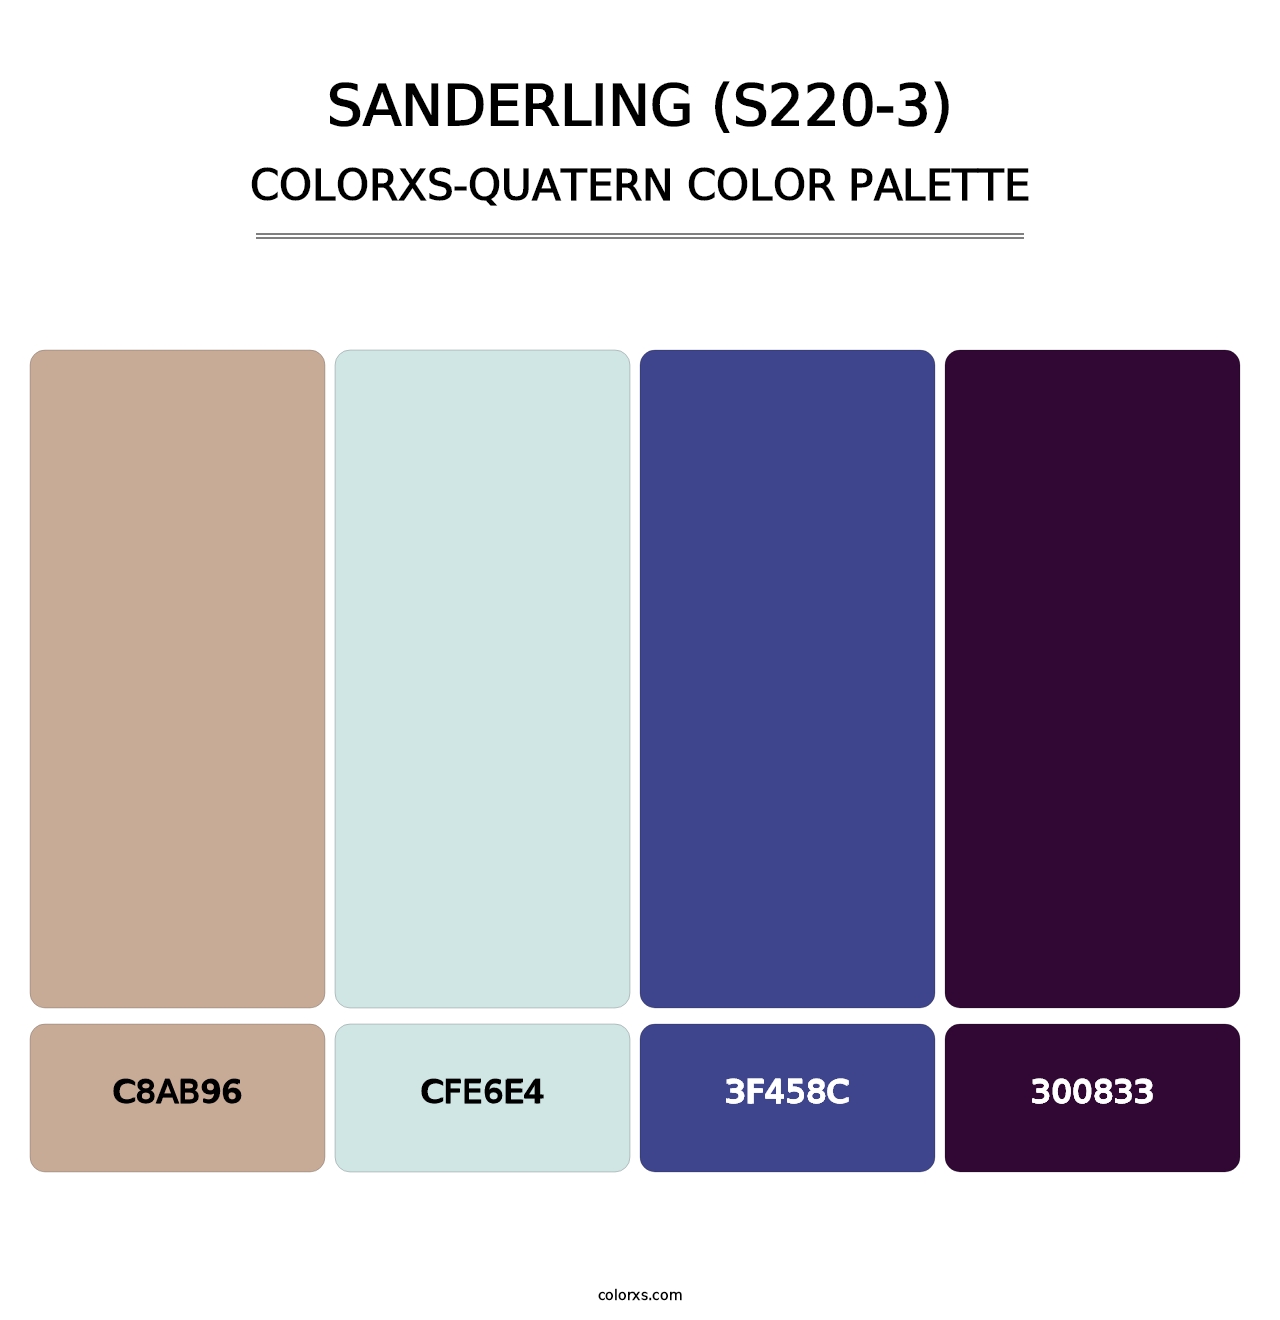 Sanderling (S220-3) - Colorxs Quatern Palette